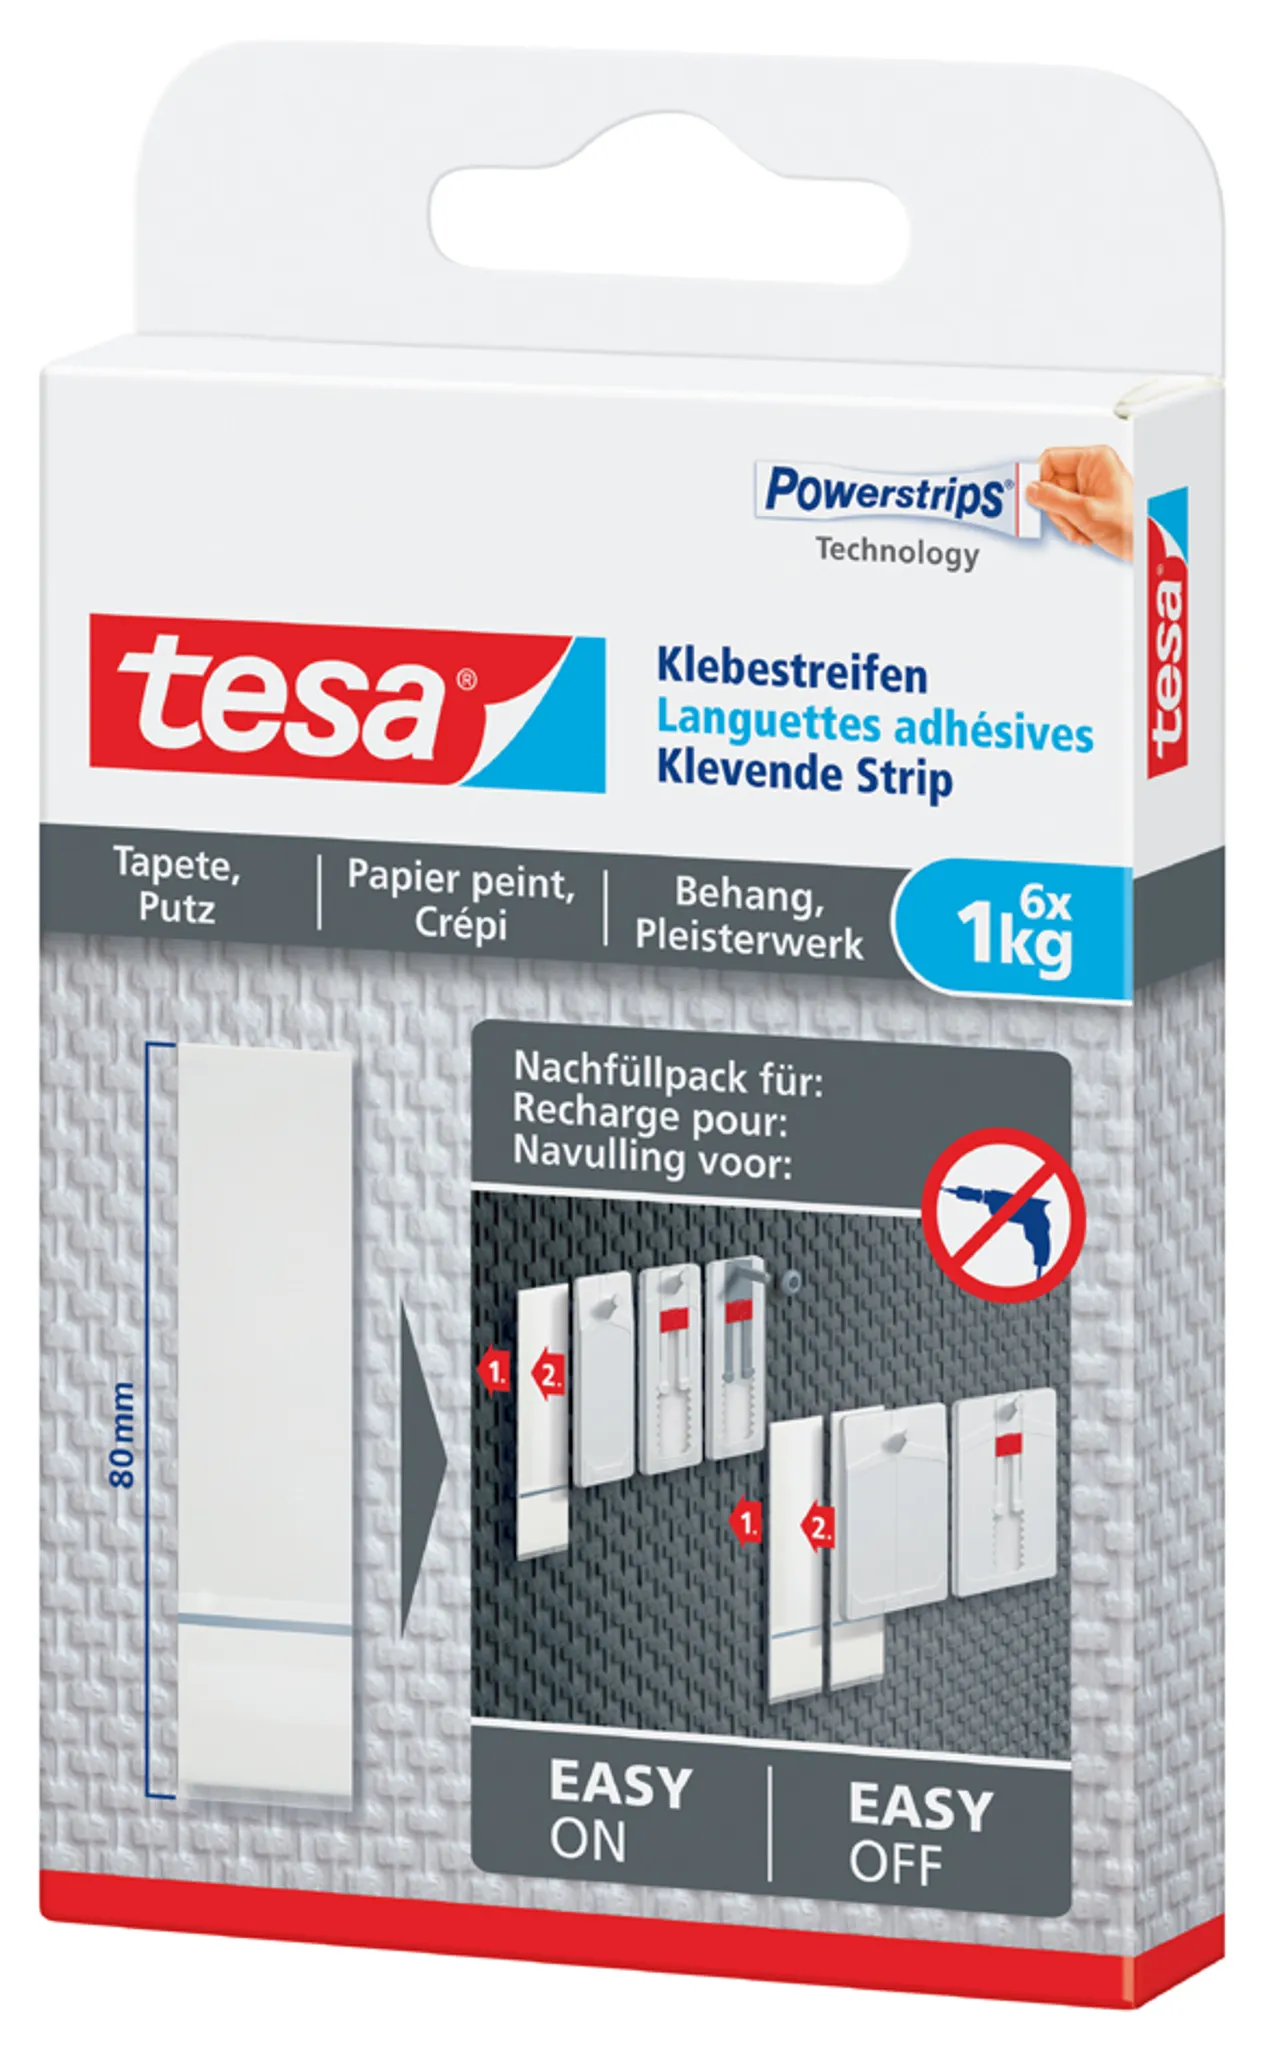 Tesa® Doppelseitige Klebepads für transparente Oberflächen und